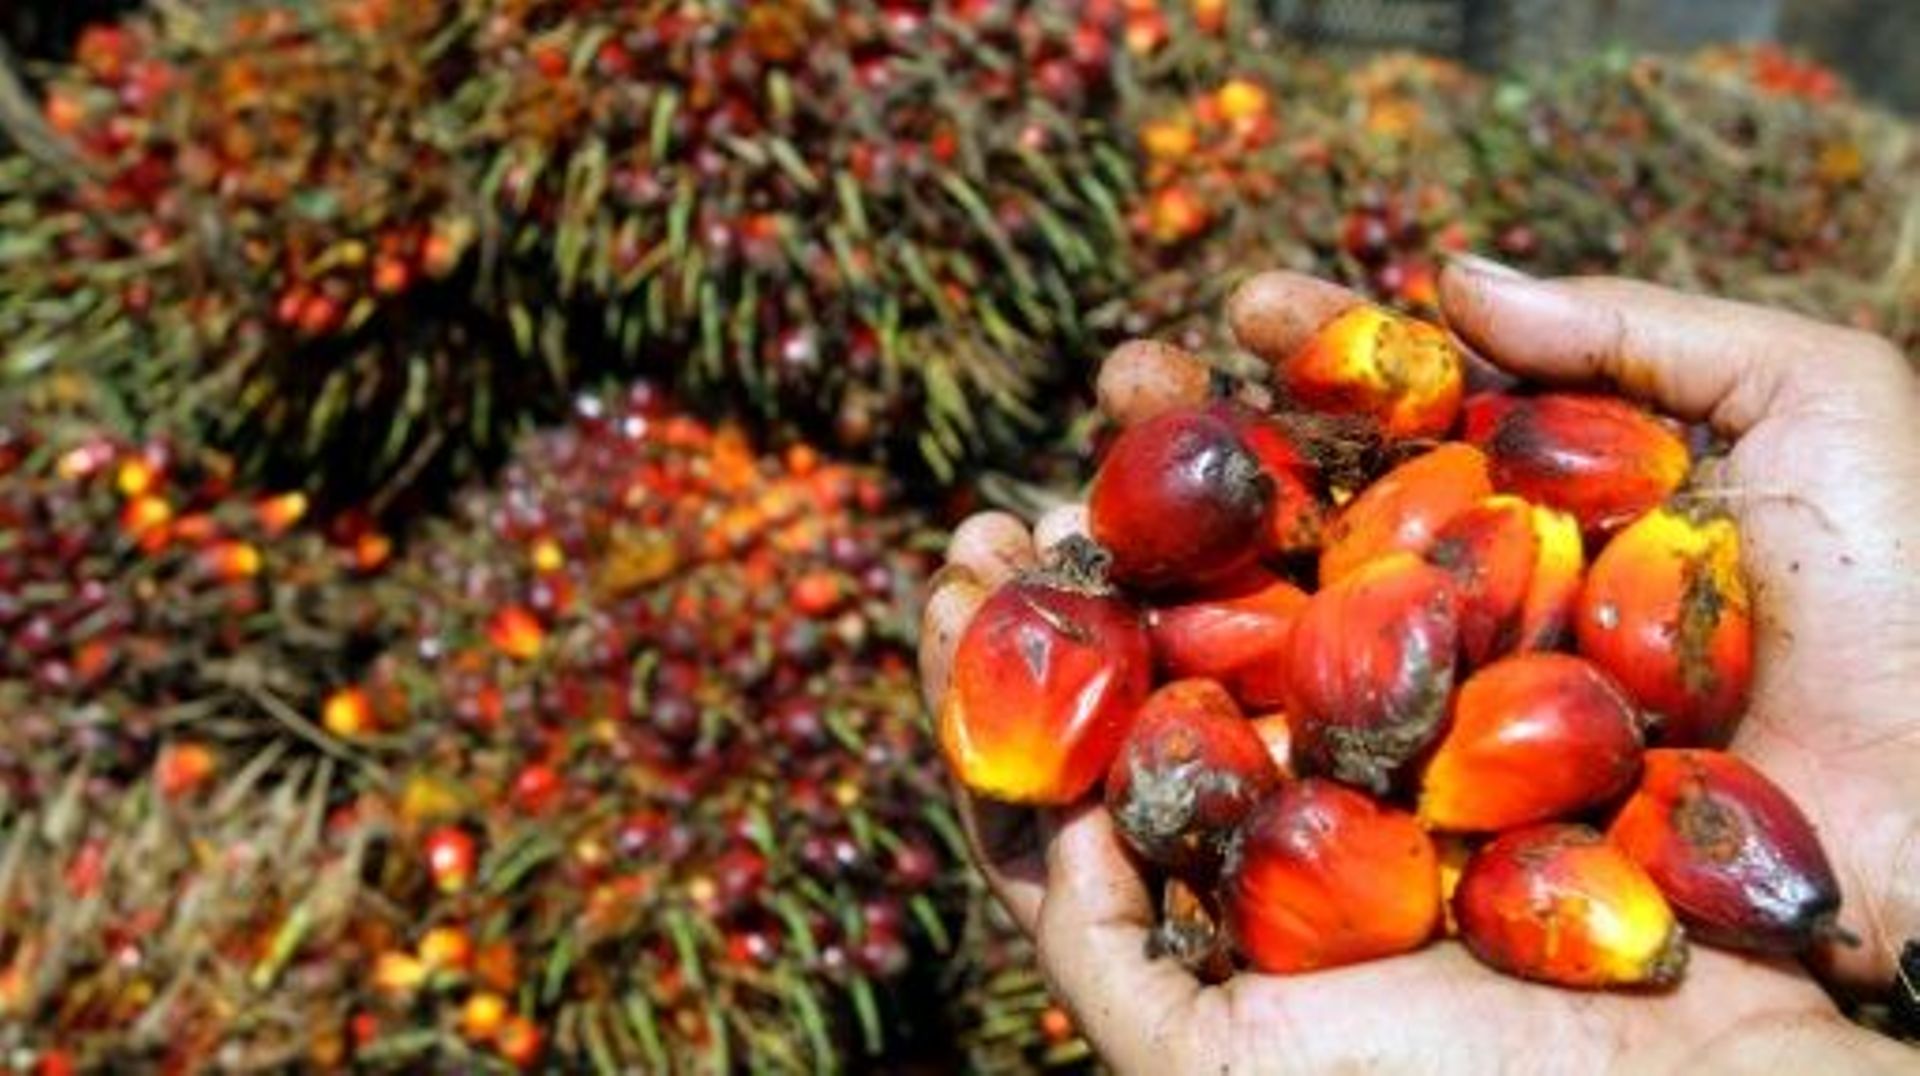 Le ministre allemand de l'Agriculture a appelé mercredi l'industrie allemande à cesser l'importation d'huile de palme non certifiée.